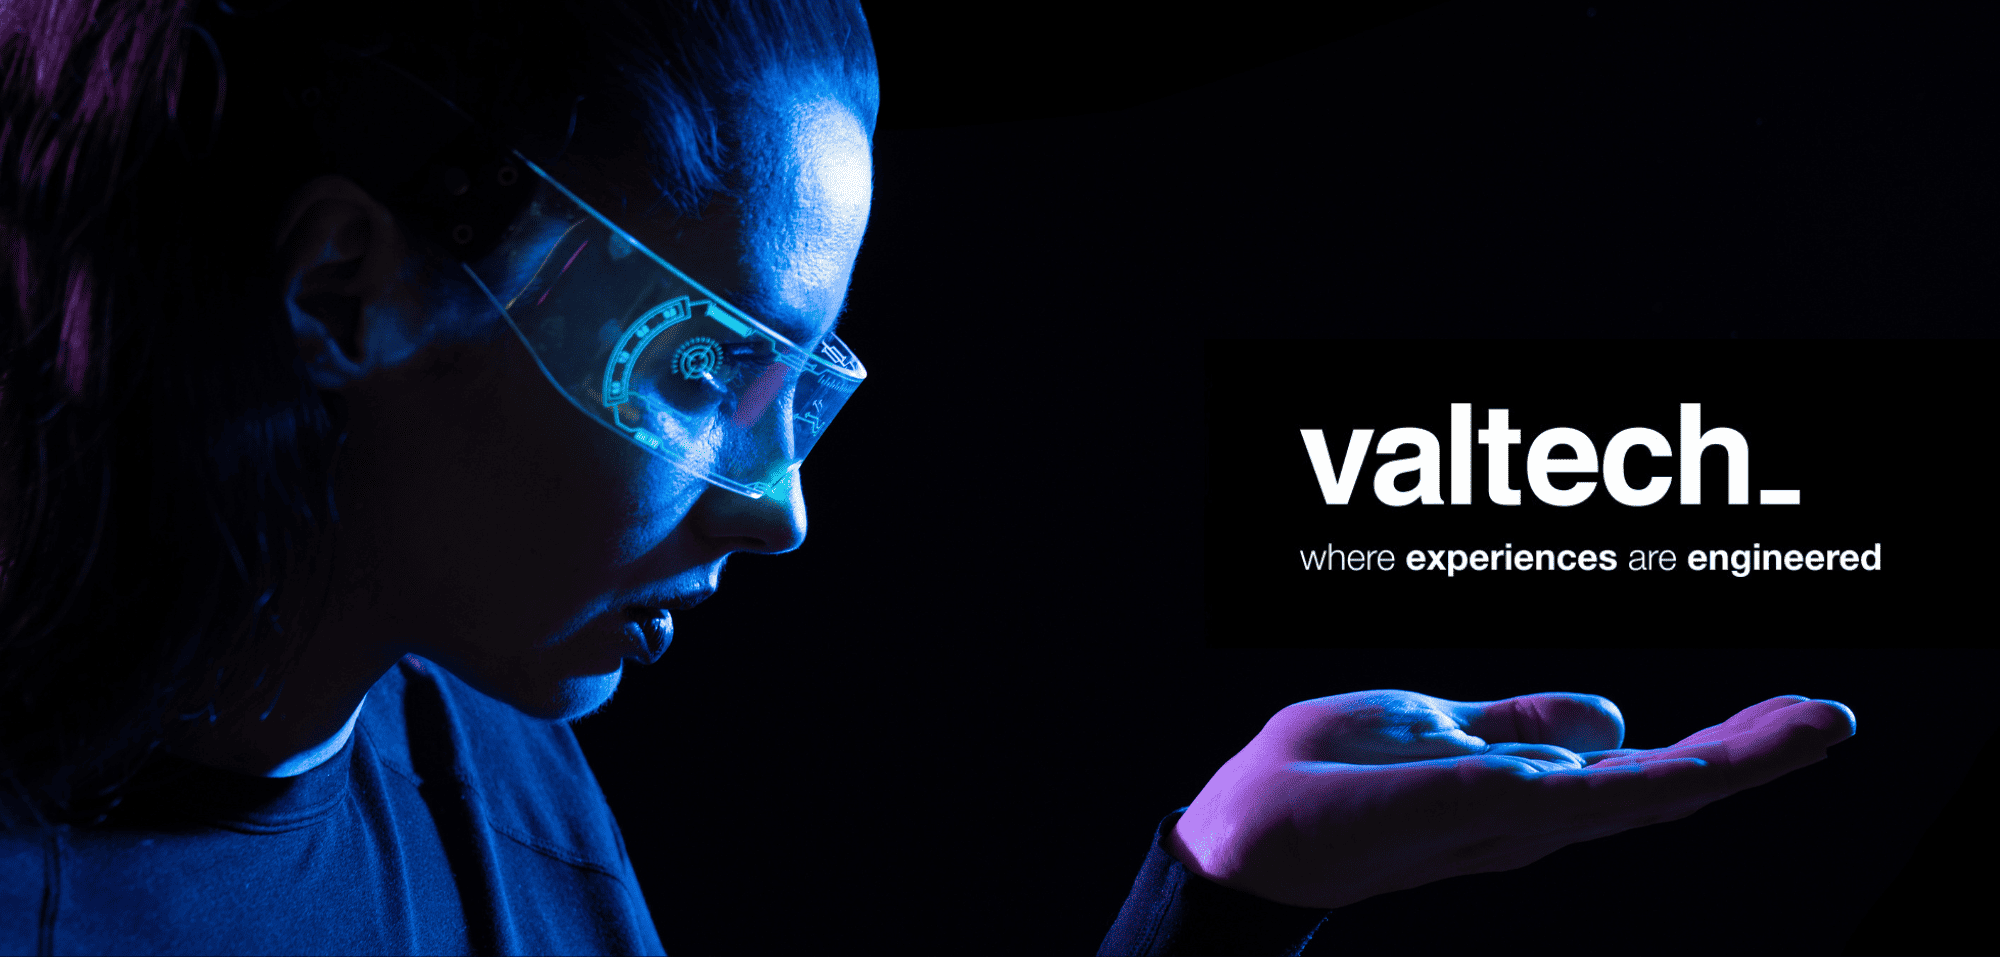 A Valtech proporciona-te muito mais que a experiência de um estágio ou primeiro emprego. Vive planos de carreira estruturados, churrascos e muitos eventos online! Submete a tua candidatura!